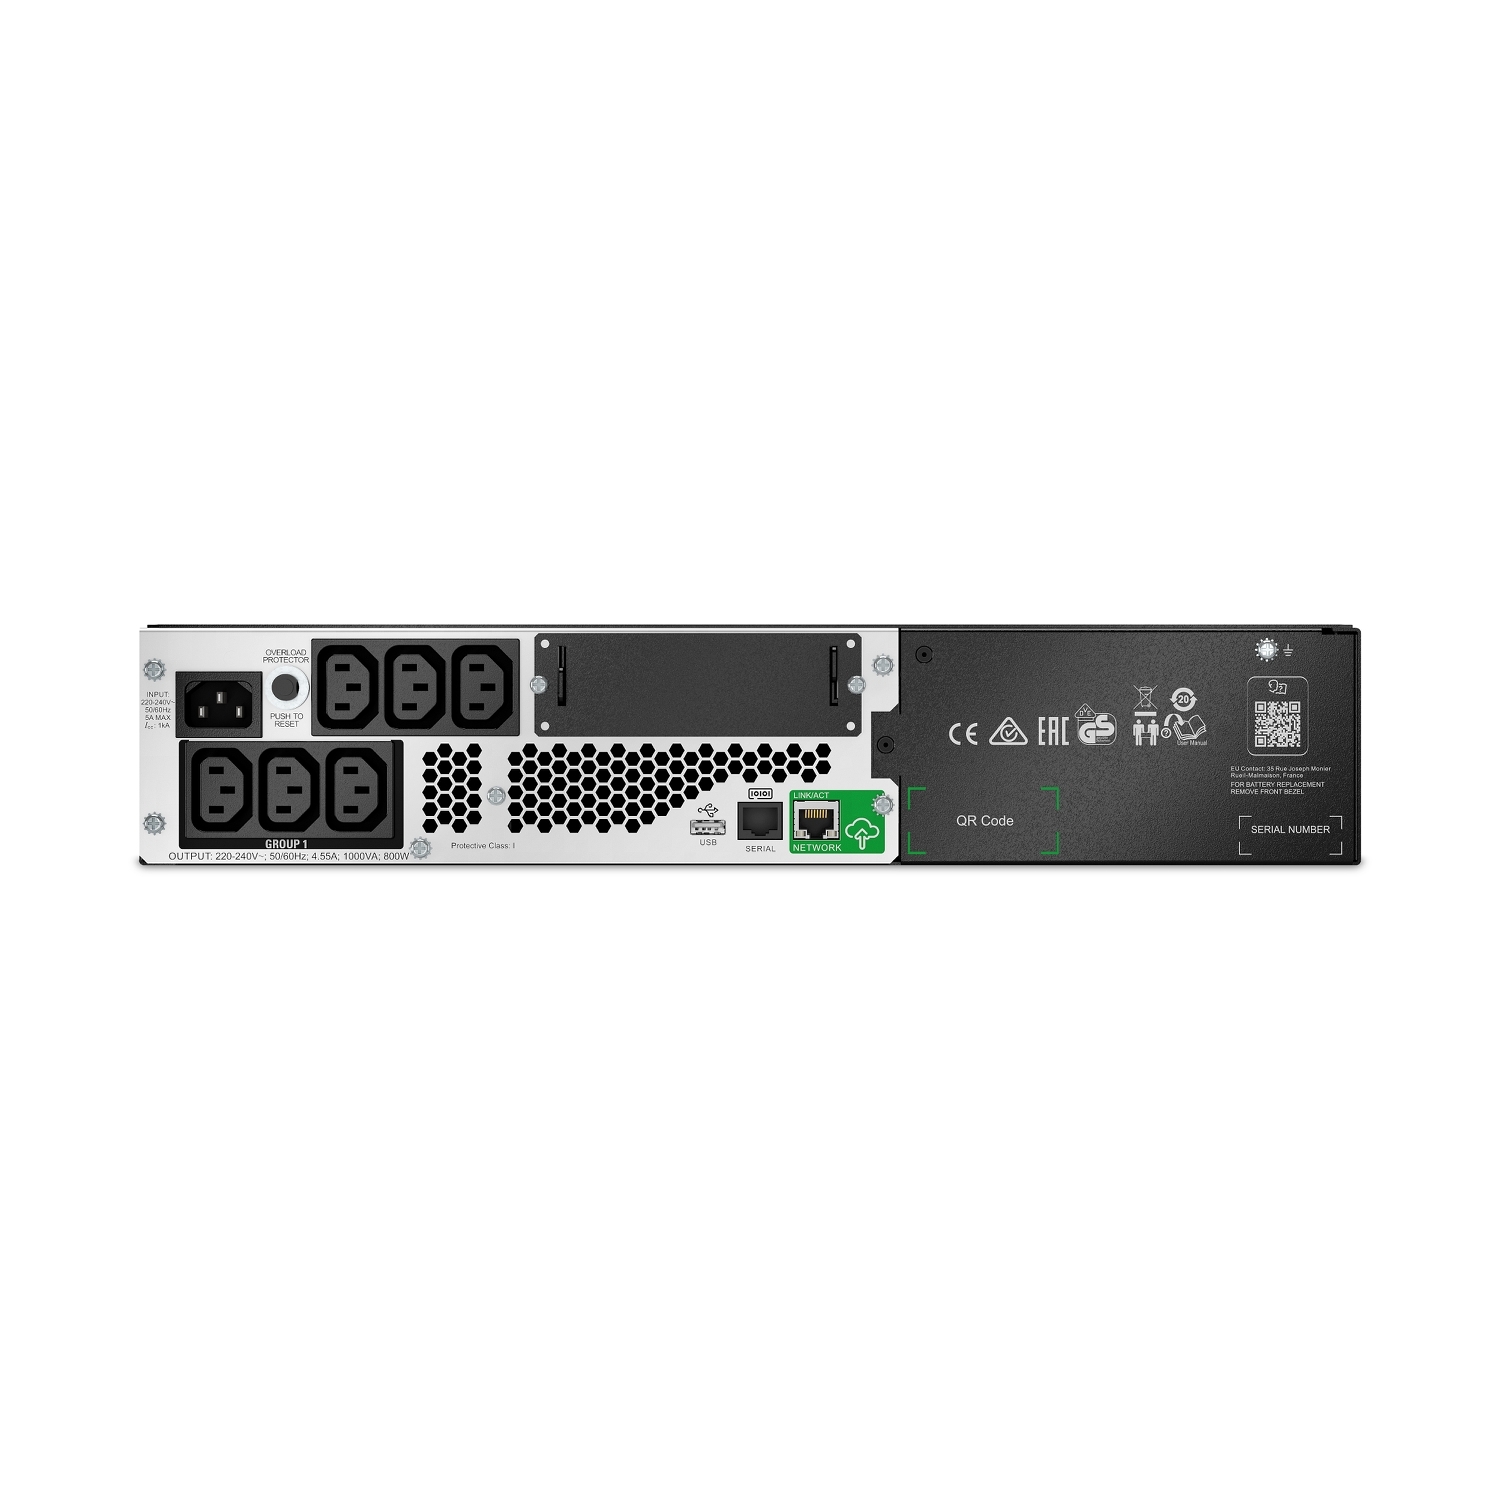 APC Smart-UPS 1000VA/800W Line Interactive UPS, 2U RM, 230V/10A Input, 6x IEC C13 Outlets, Li-Ion Battery, SmartConnect Port  Slot, Short Depth